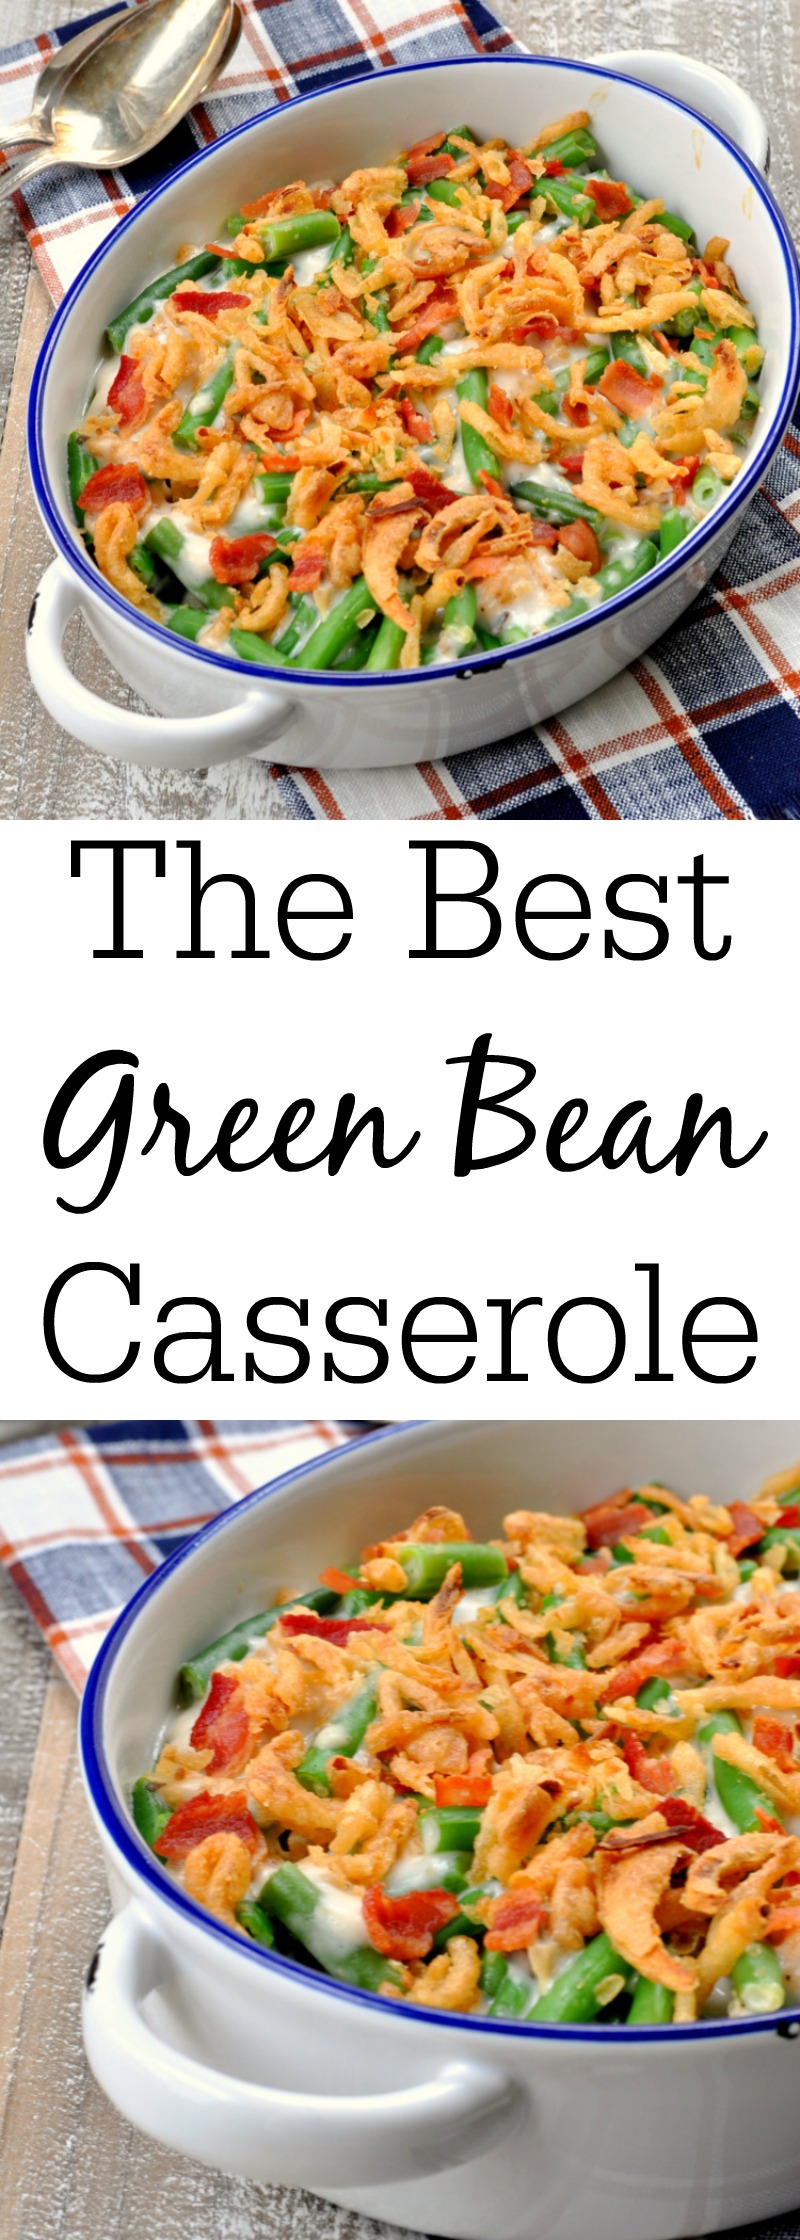 The Best Green Bean Casserole